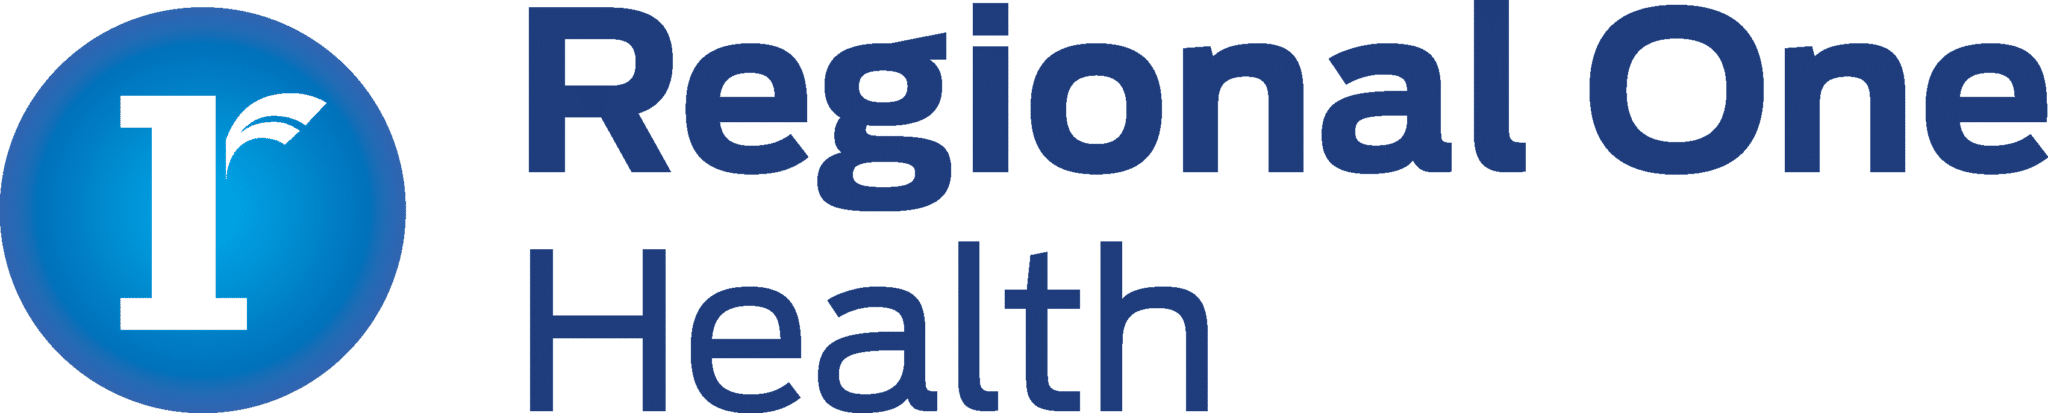 logo reading Regional One Health